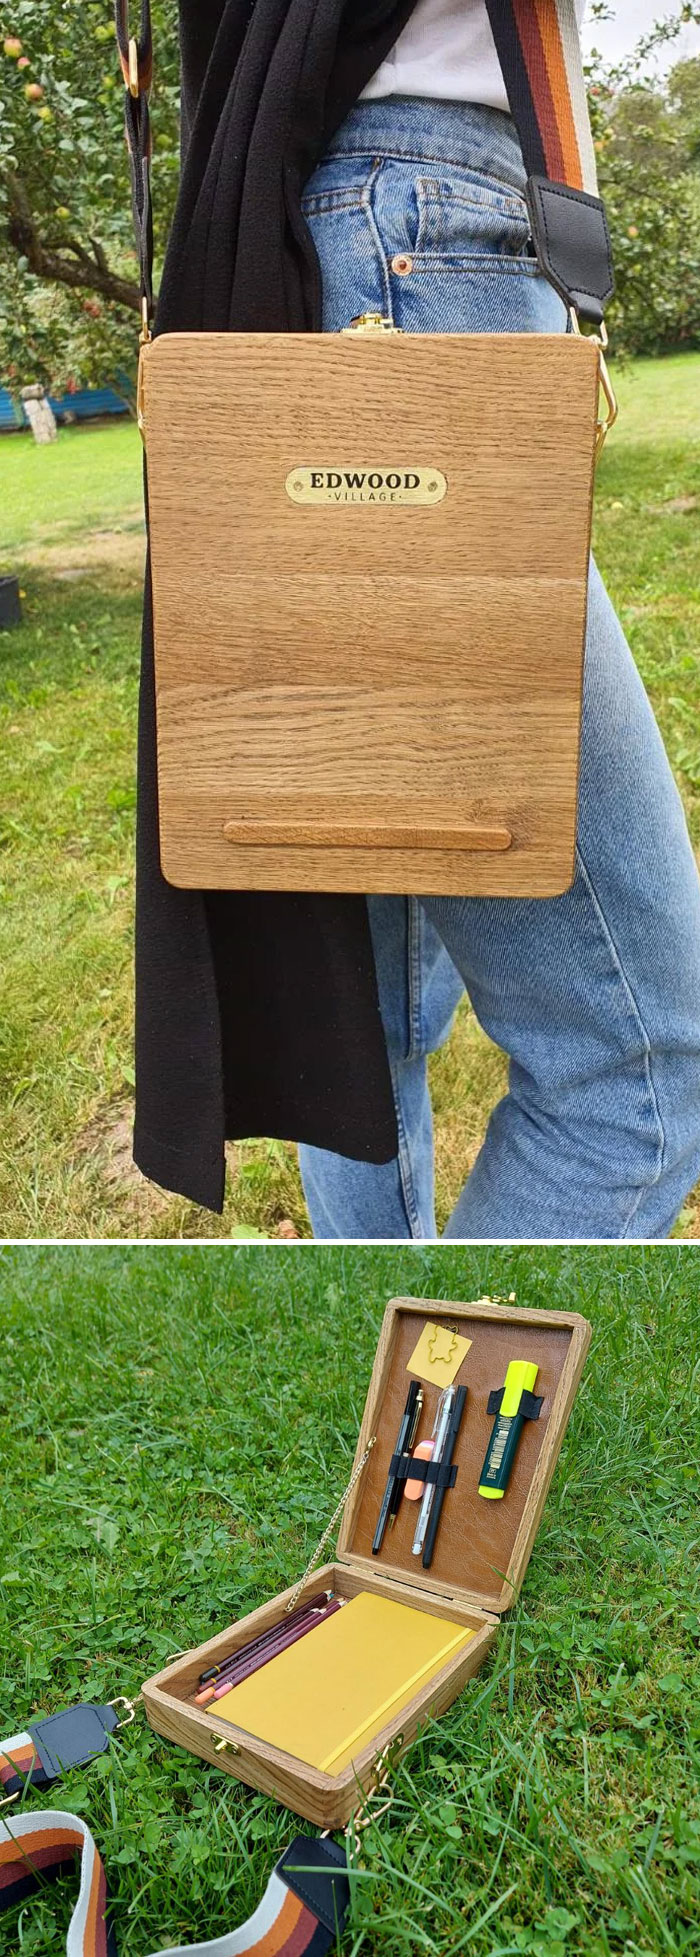 Mon mari m’a fabriqué ce sac en bois car j’ai commencé à faire plus de croquis urbains.